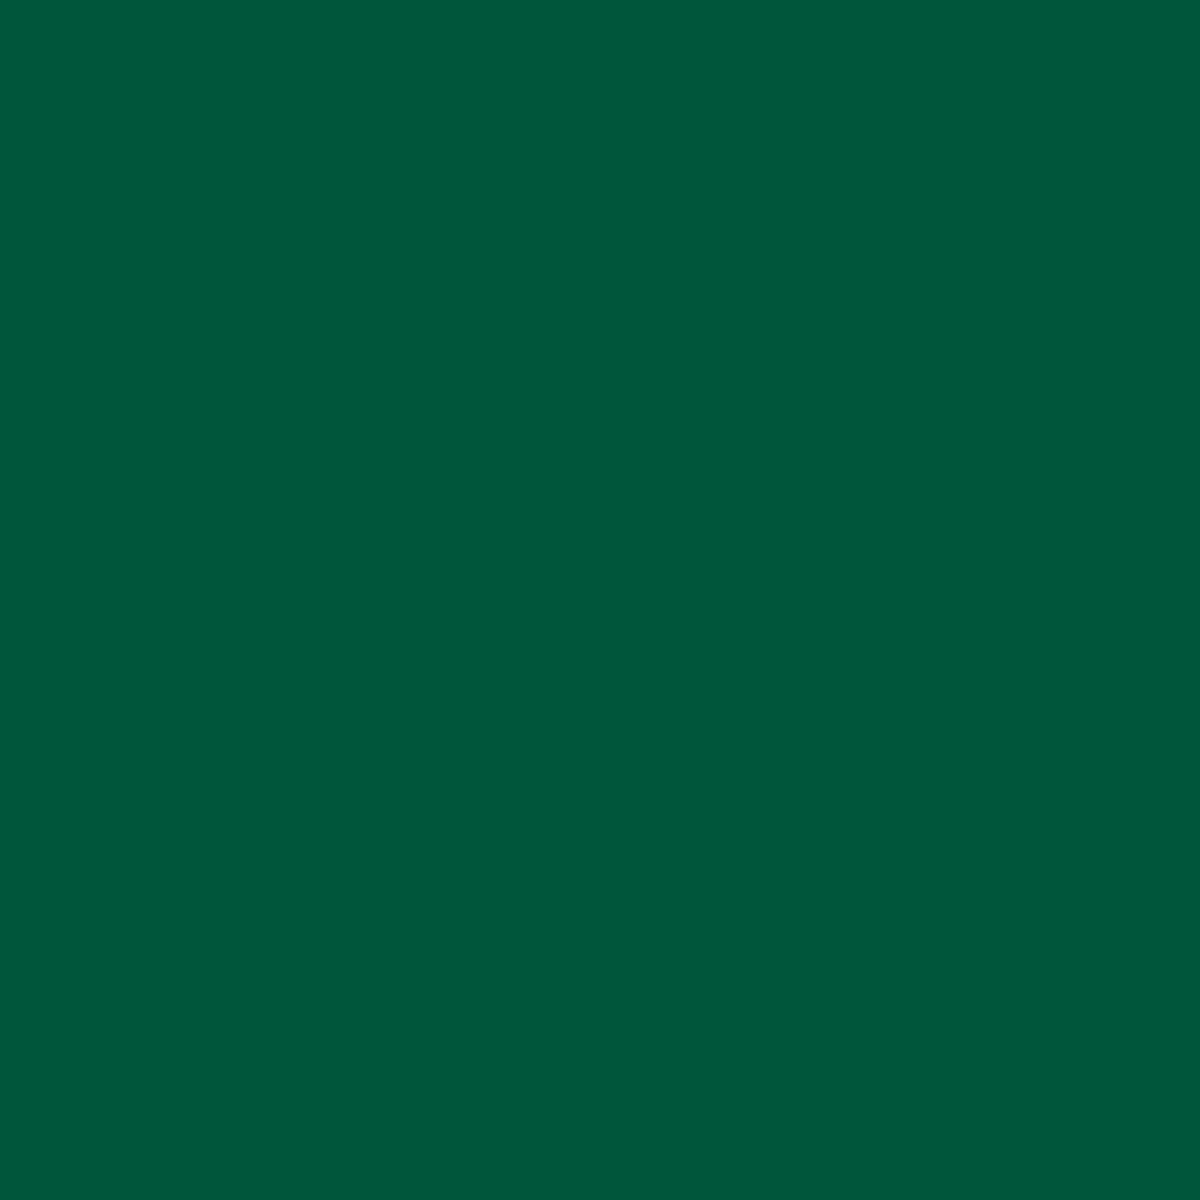 castleton-green image